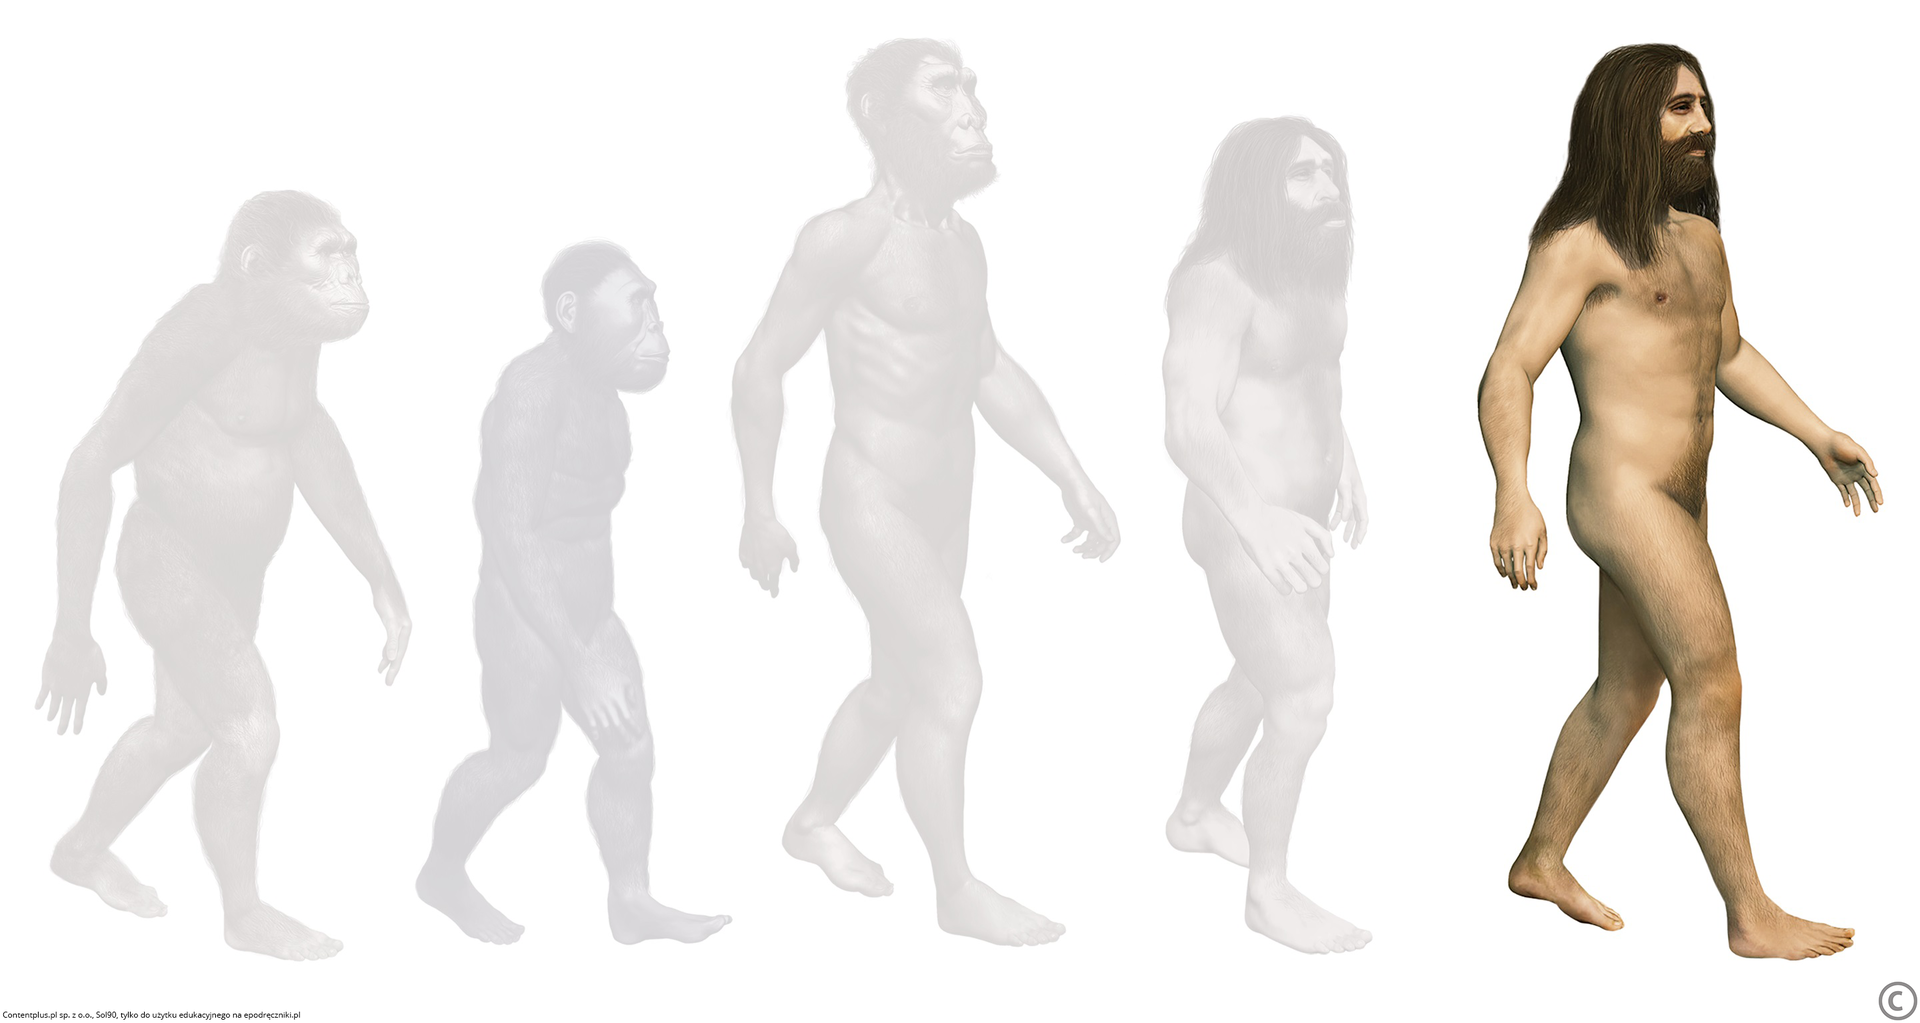 Ilustracja przedstawia schemat rozwoju gatunku ludzkiego. Bliżej prawej krawędzi zaznaczono schematycznie Homo sapiens sapiens, z długimi włosami na głowie i brodą. W centrum i po lewej stronie ilustracji cienie pozostałych gatunków, poprzedników Homo sapiens w procesie ewolucji.